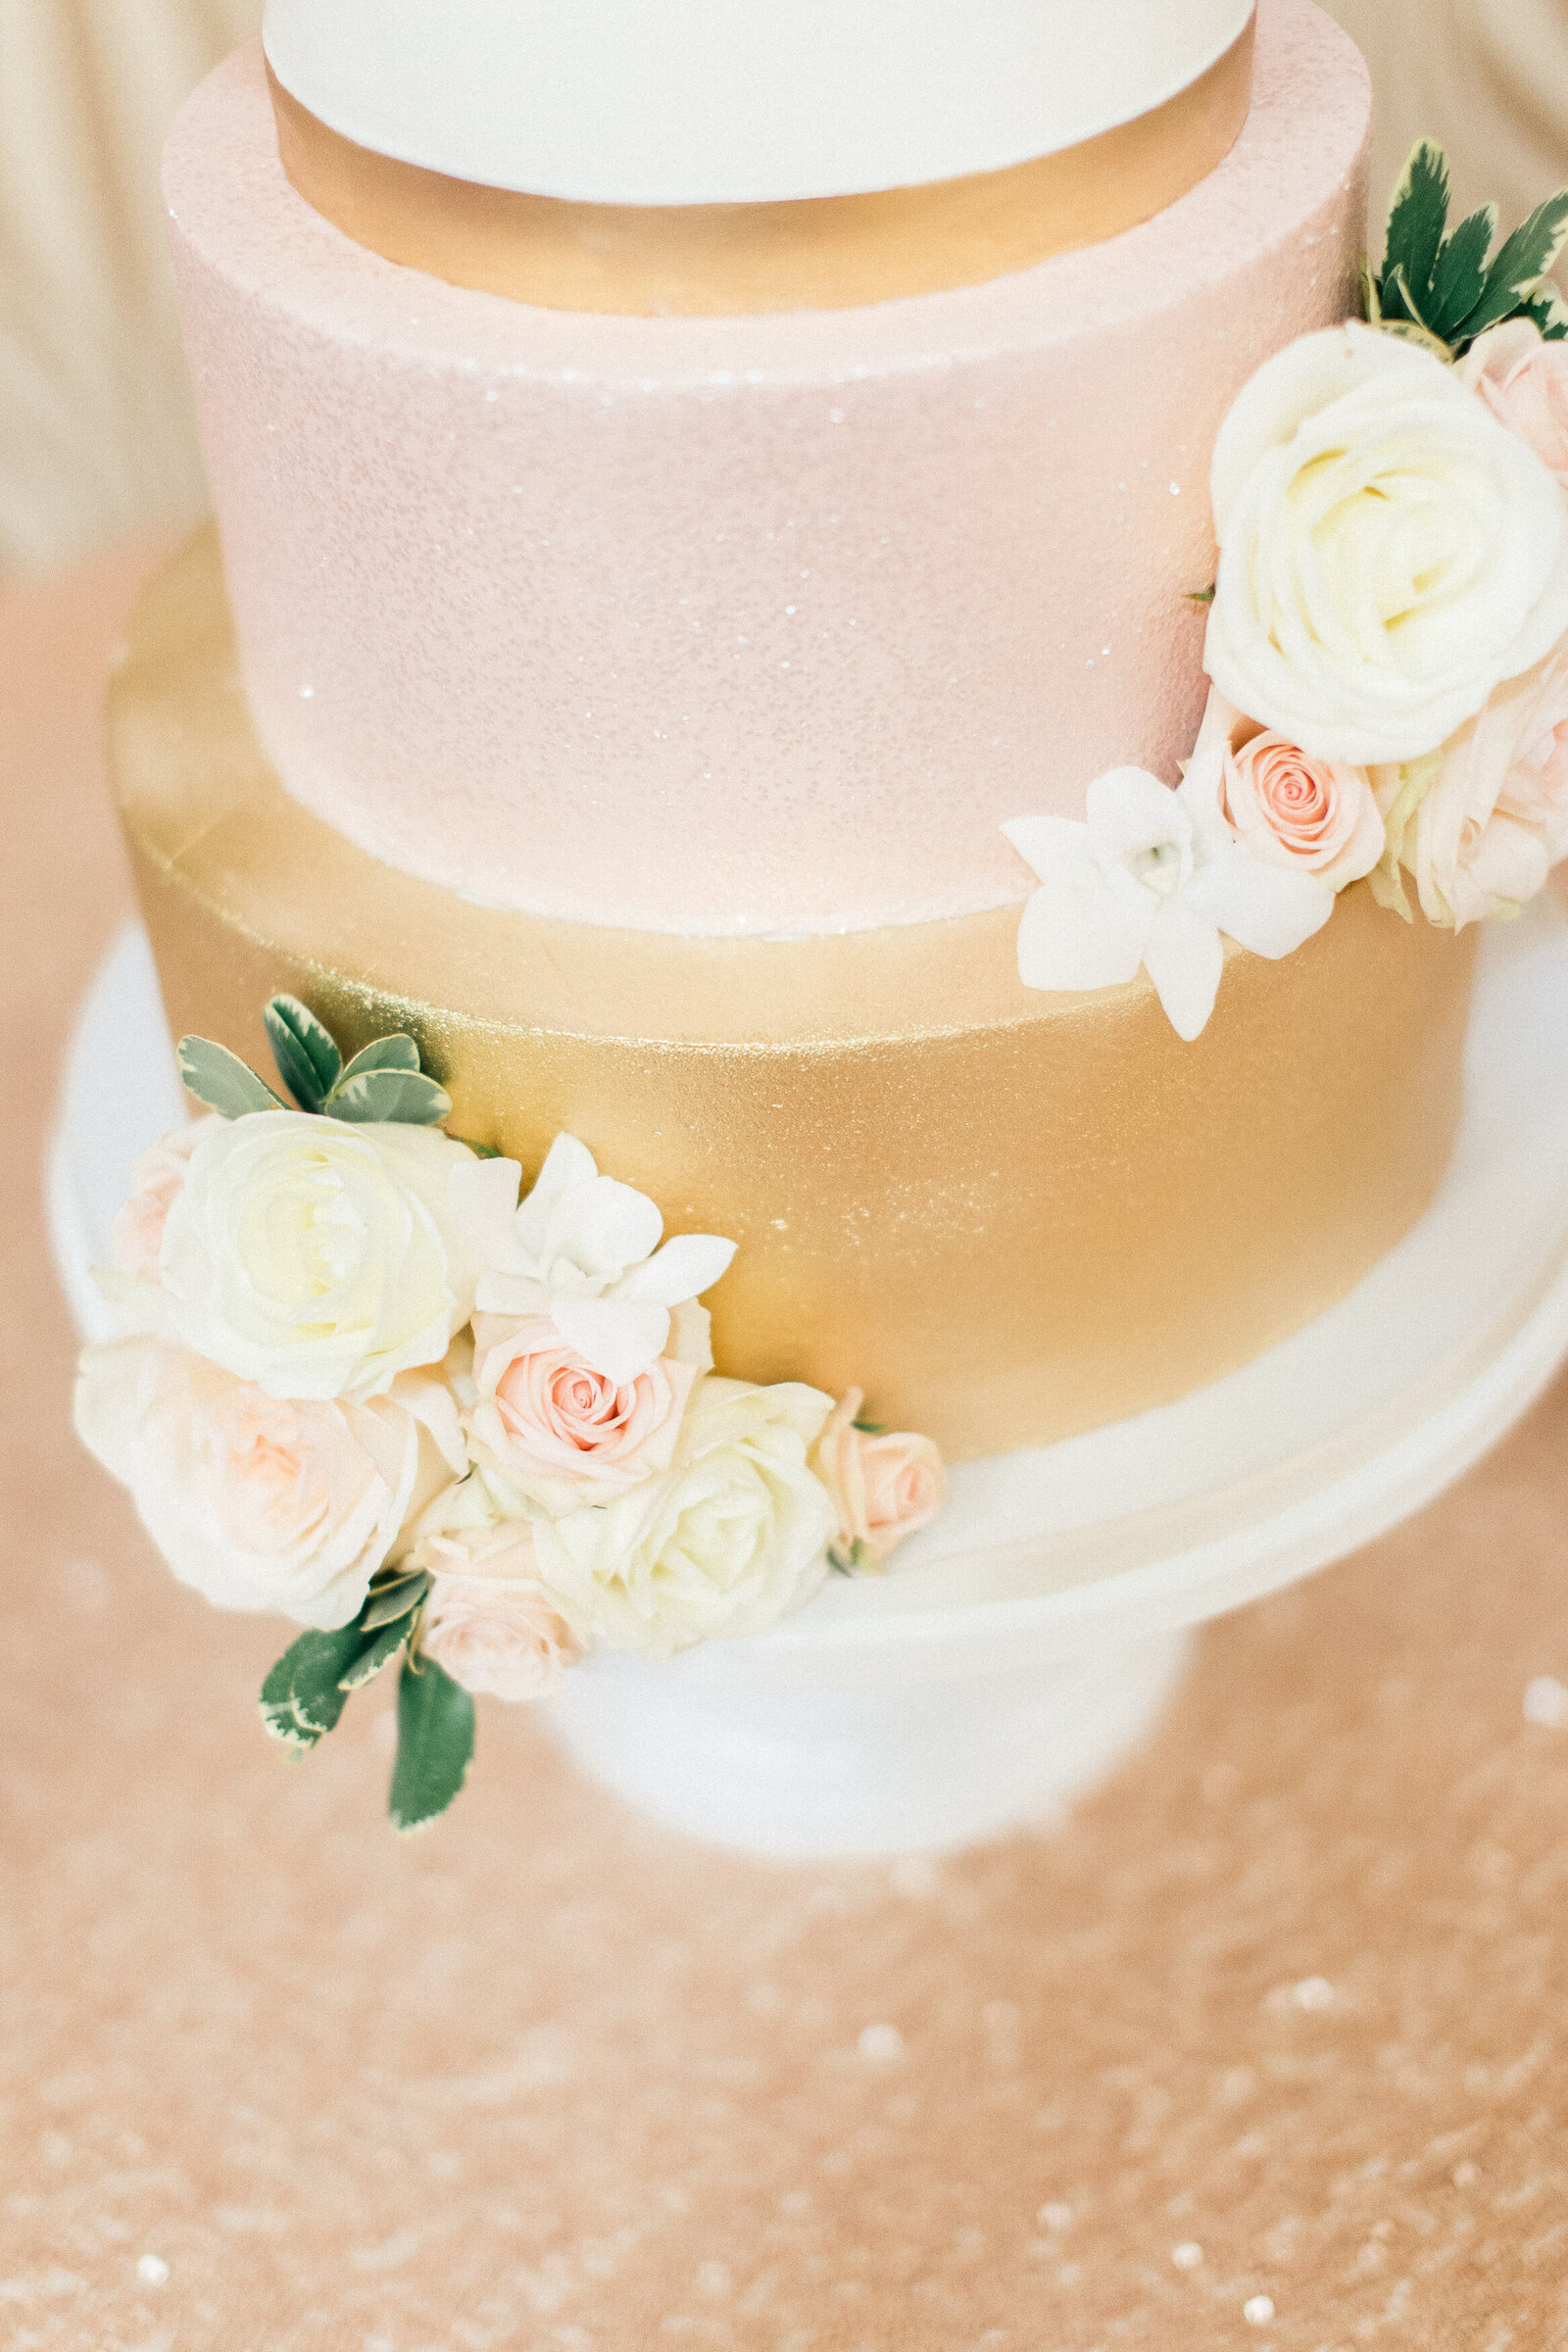 Glamorous-Wedding-Cake-Ashley-Cakes-1